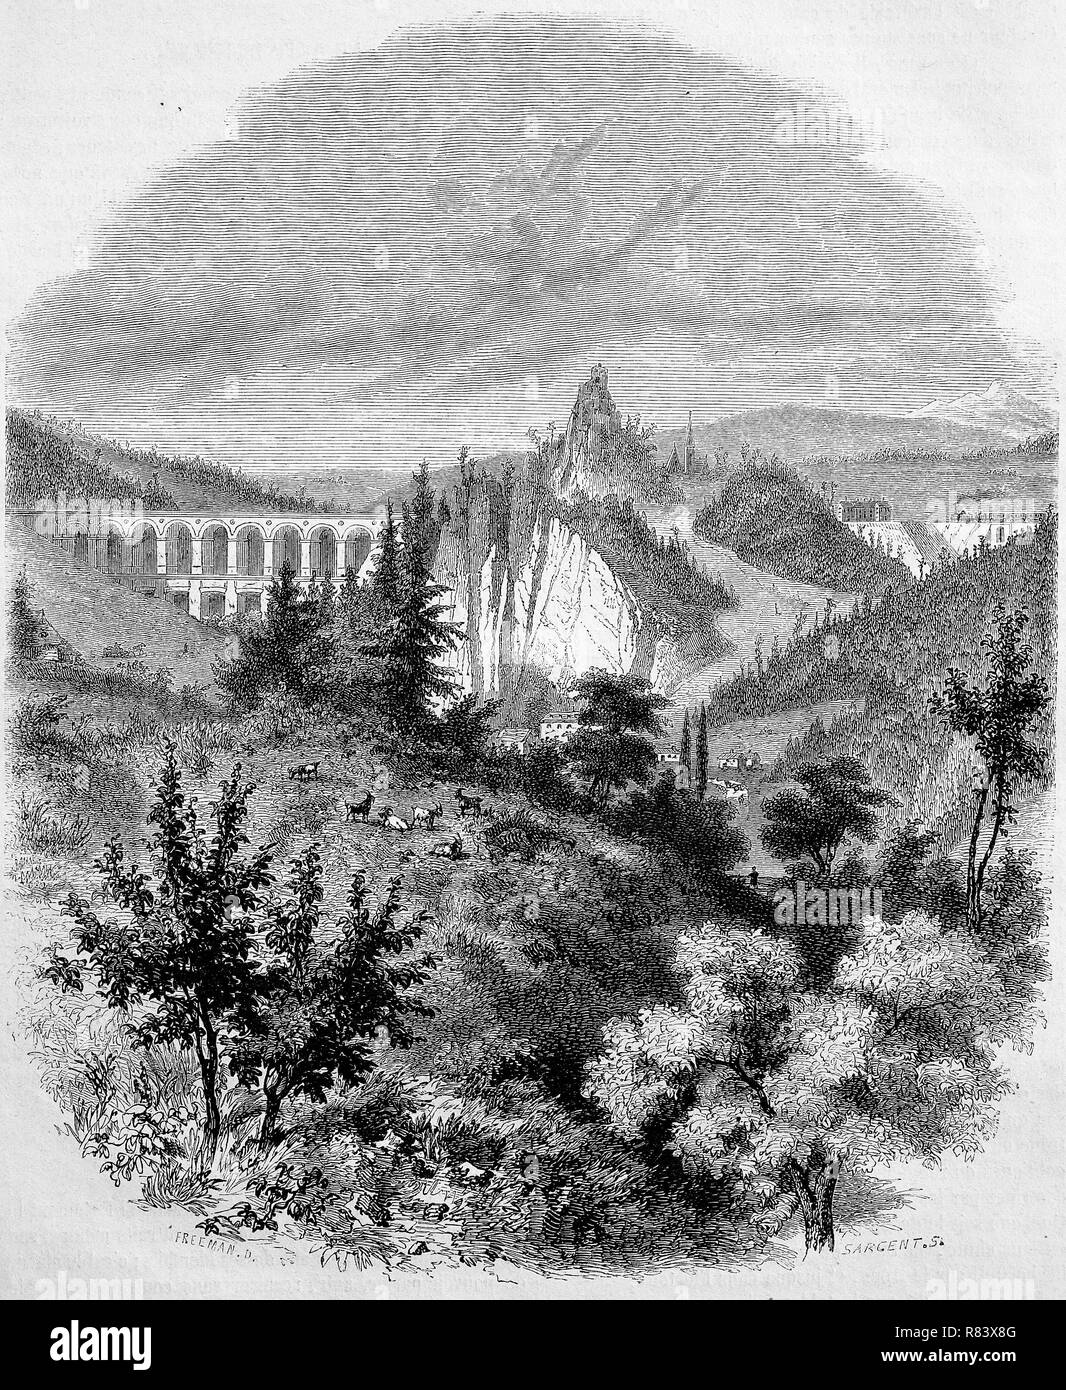 Digital verbesserte Reproduktion, Semmering Eisenbahnbrücke mit der umliegenden Bergwelt, Burg Clam, Oberösterreich, Österreich, von einem ursprünglichen Drucken aus dem Jahr 1855 Stockfoto